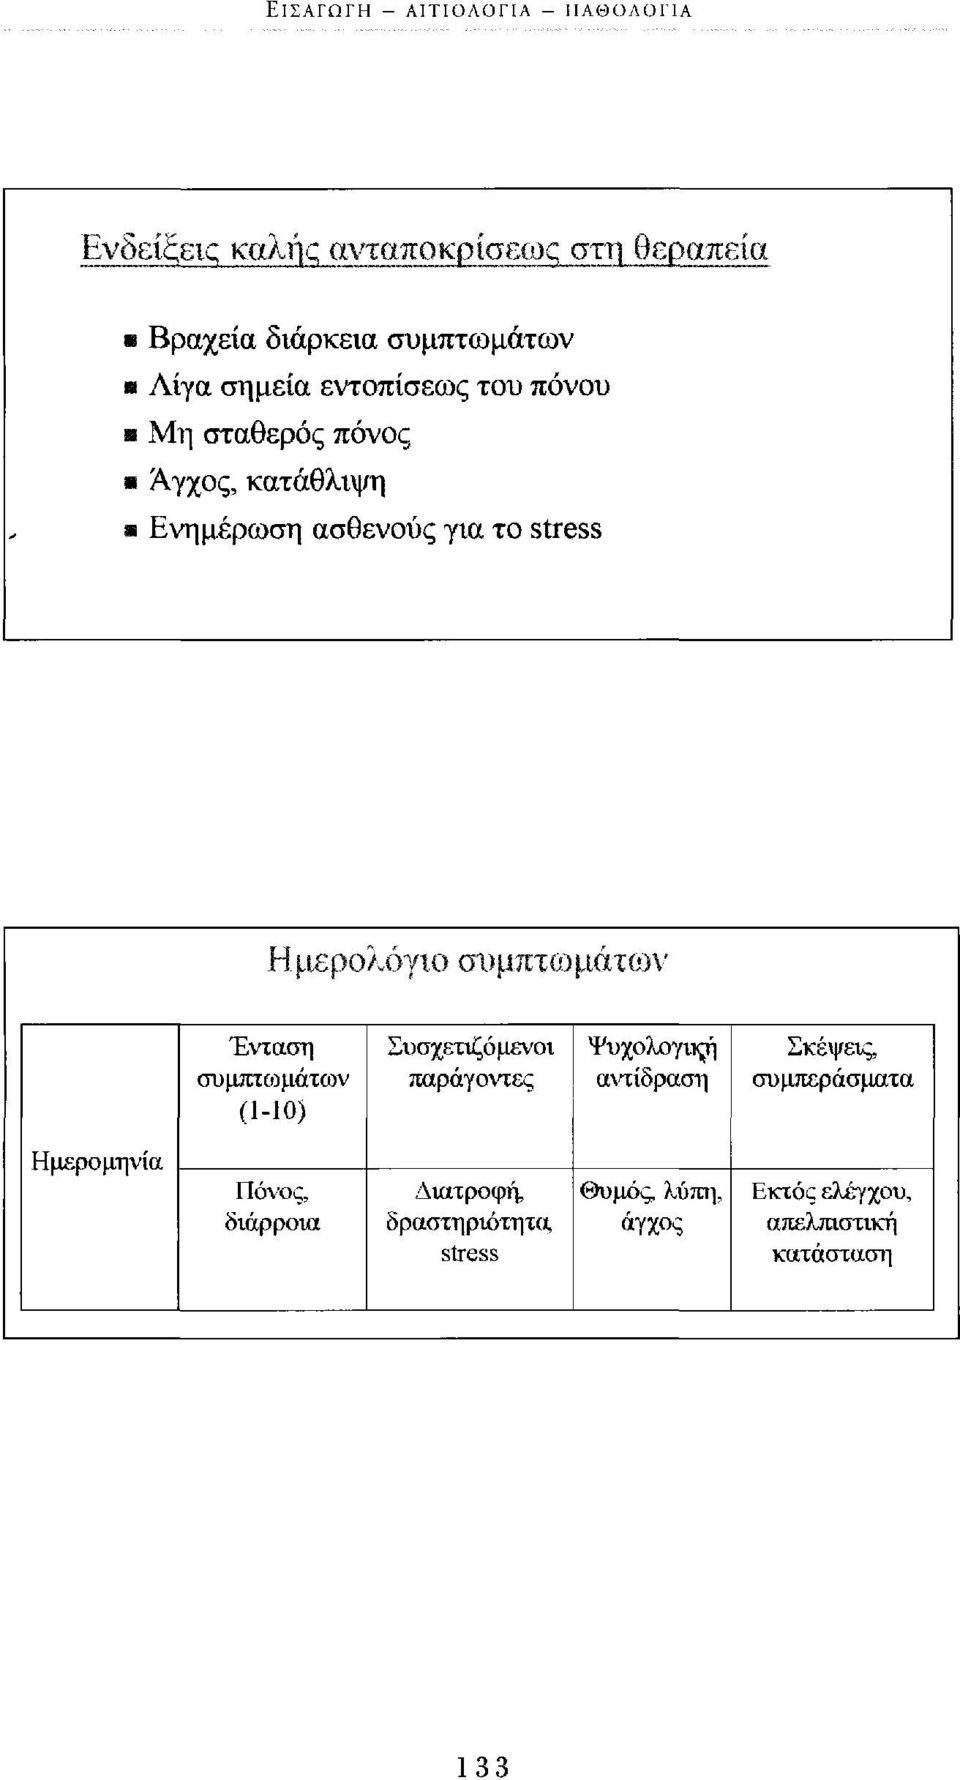 συμπτωμάτων Ένταση συμπτοομάτων (1-10) Συσχετιζόμενοι παράγοντες Ψυχολογικ-ή αντίδραση Σκέψεις, συμπεράσματα